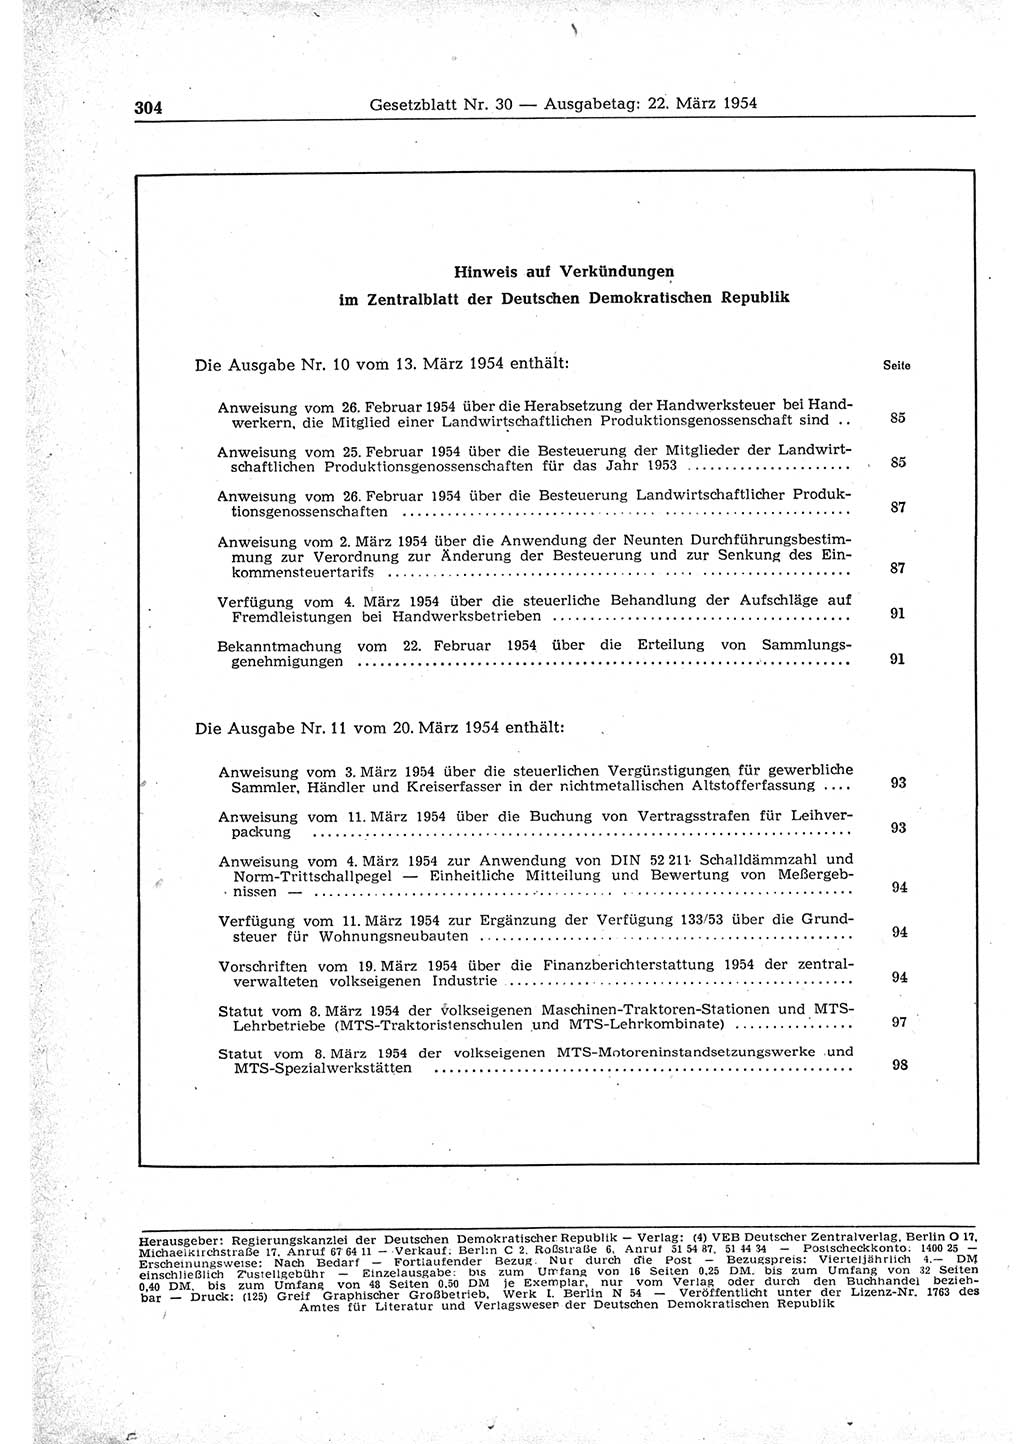 Gesetzblatt (GBl.) der Deutschen Demokratischen Republik (DDR) 1954, Seite 304 (GBl. DDR 1954, S. 304)